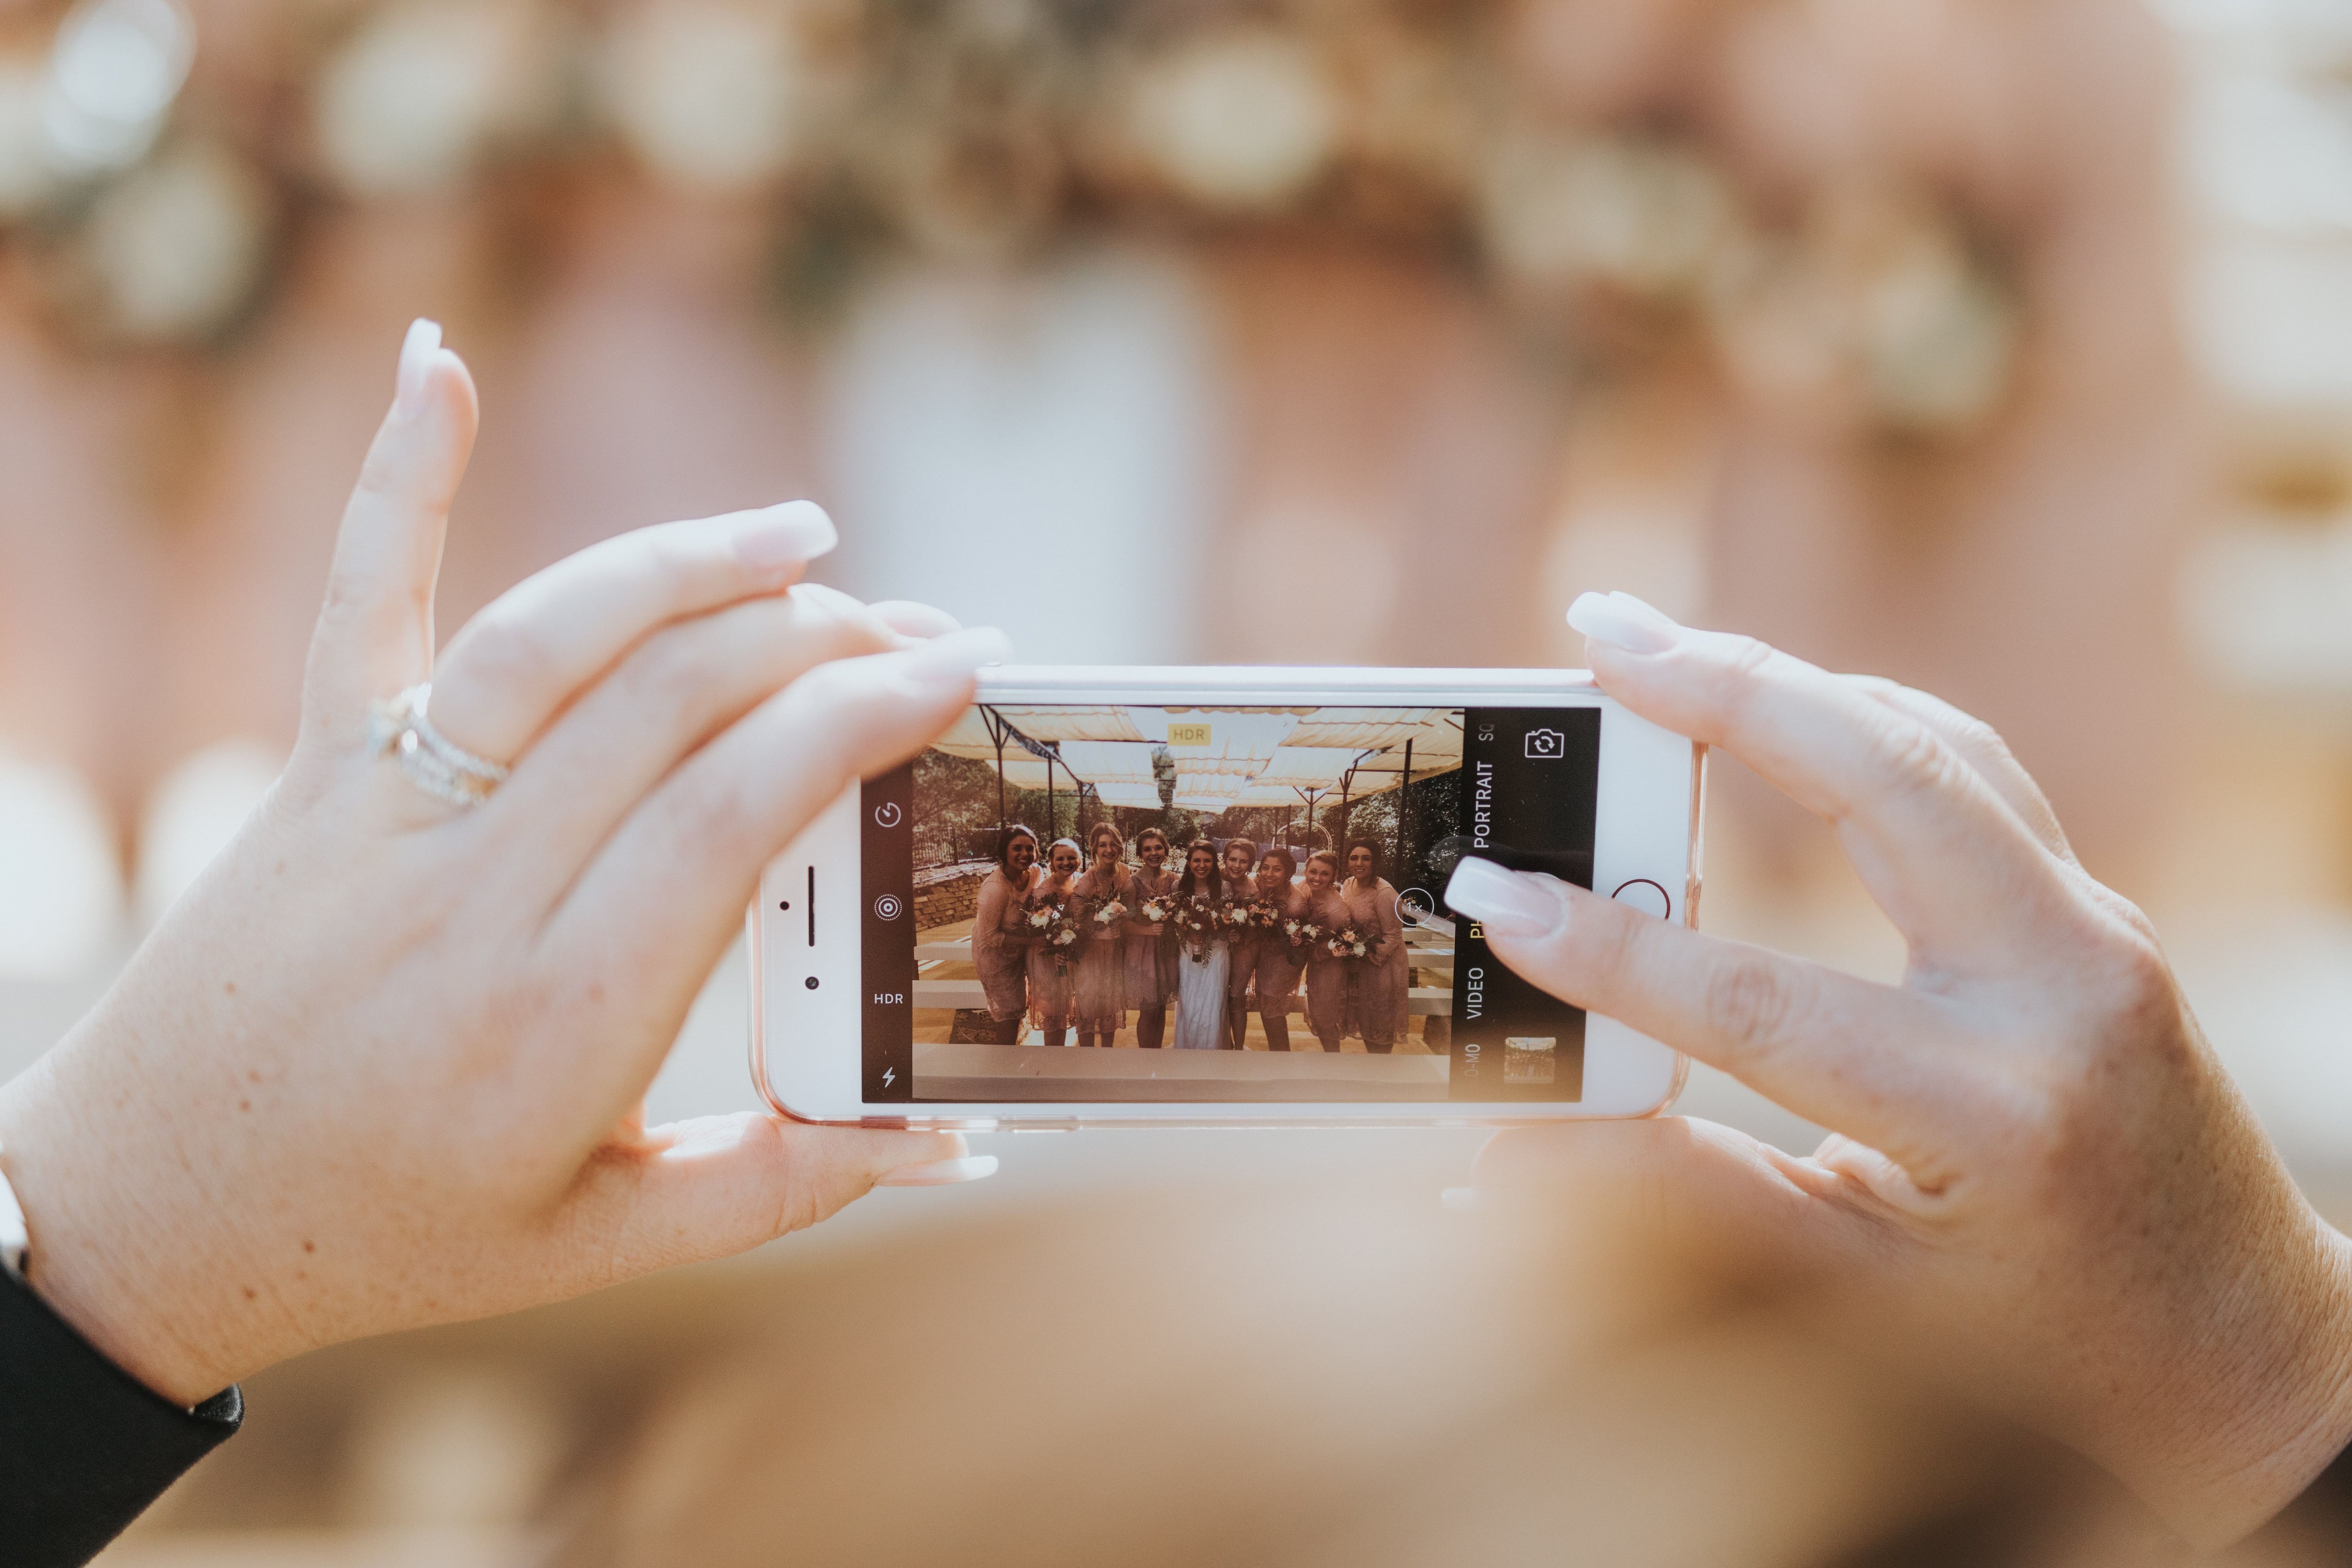 Does social media pressure ruin the joy of weddings?